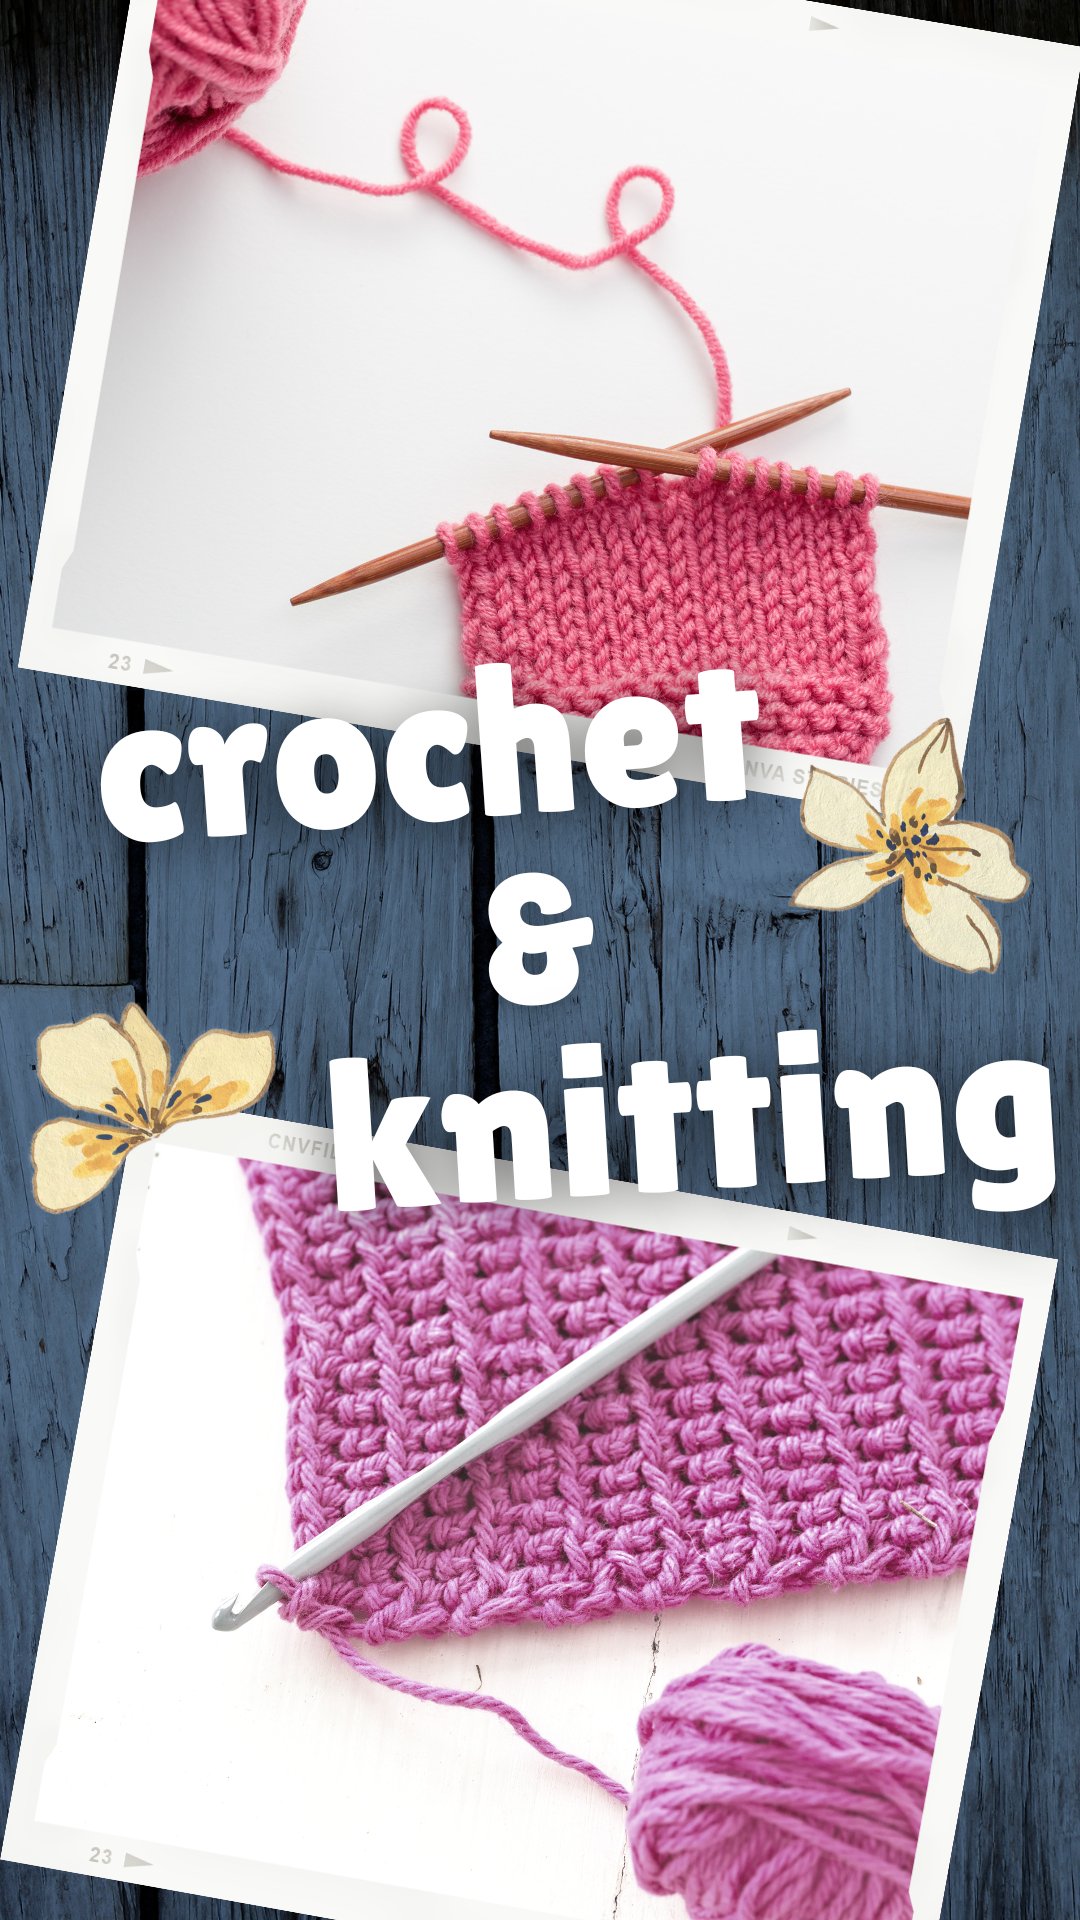 Crochet & Knitting